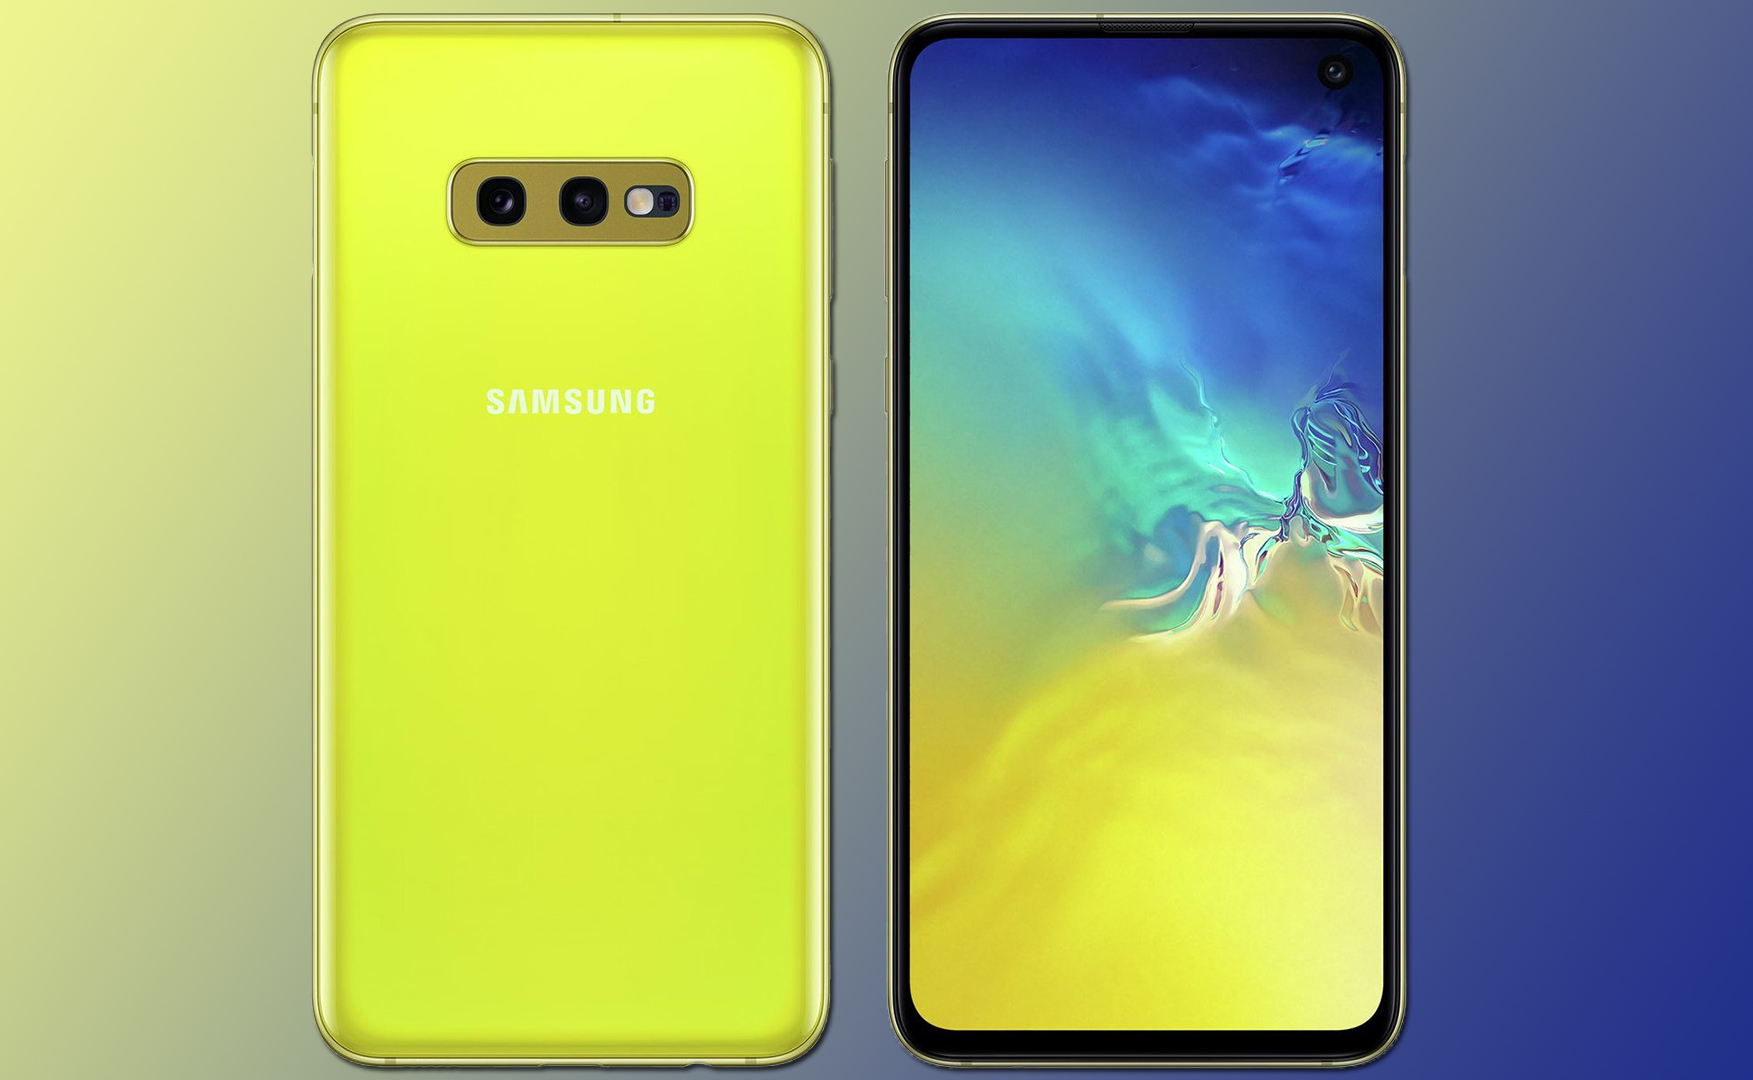 Samsung Galaxy S10 i jego czytnik jednak bezpieczny? Tak twierdzi strona dobreprogramy.pl